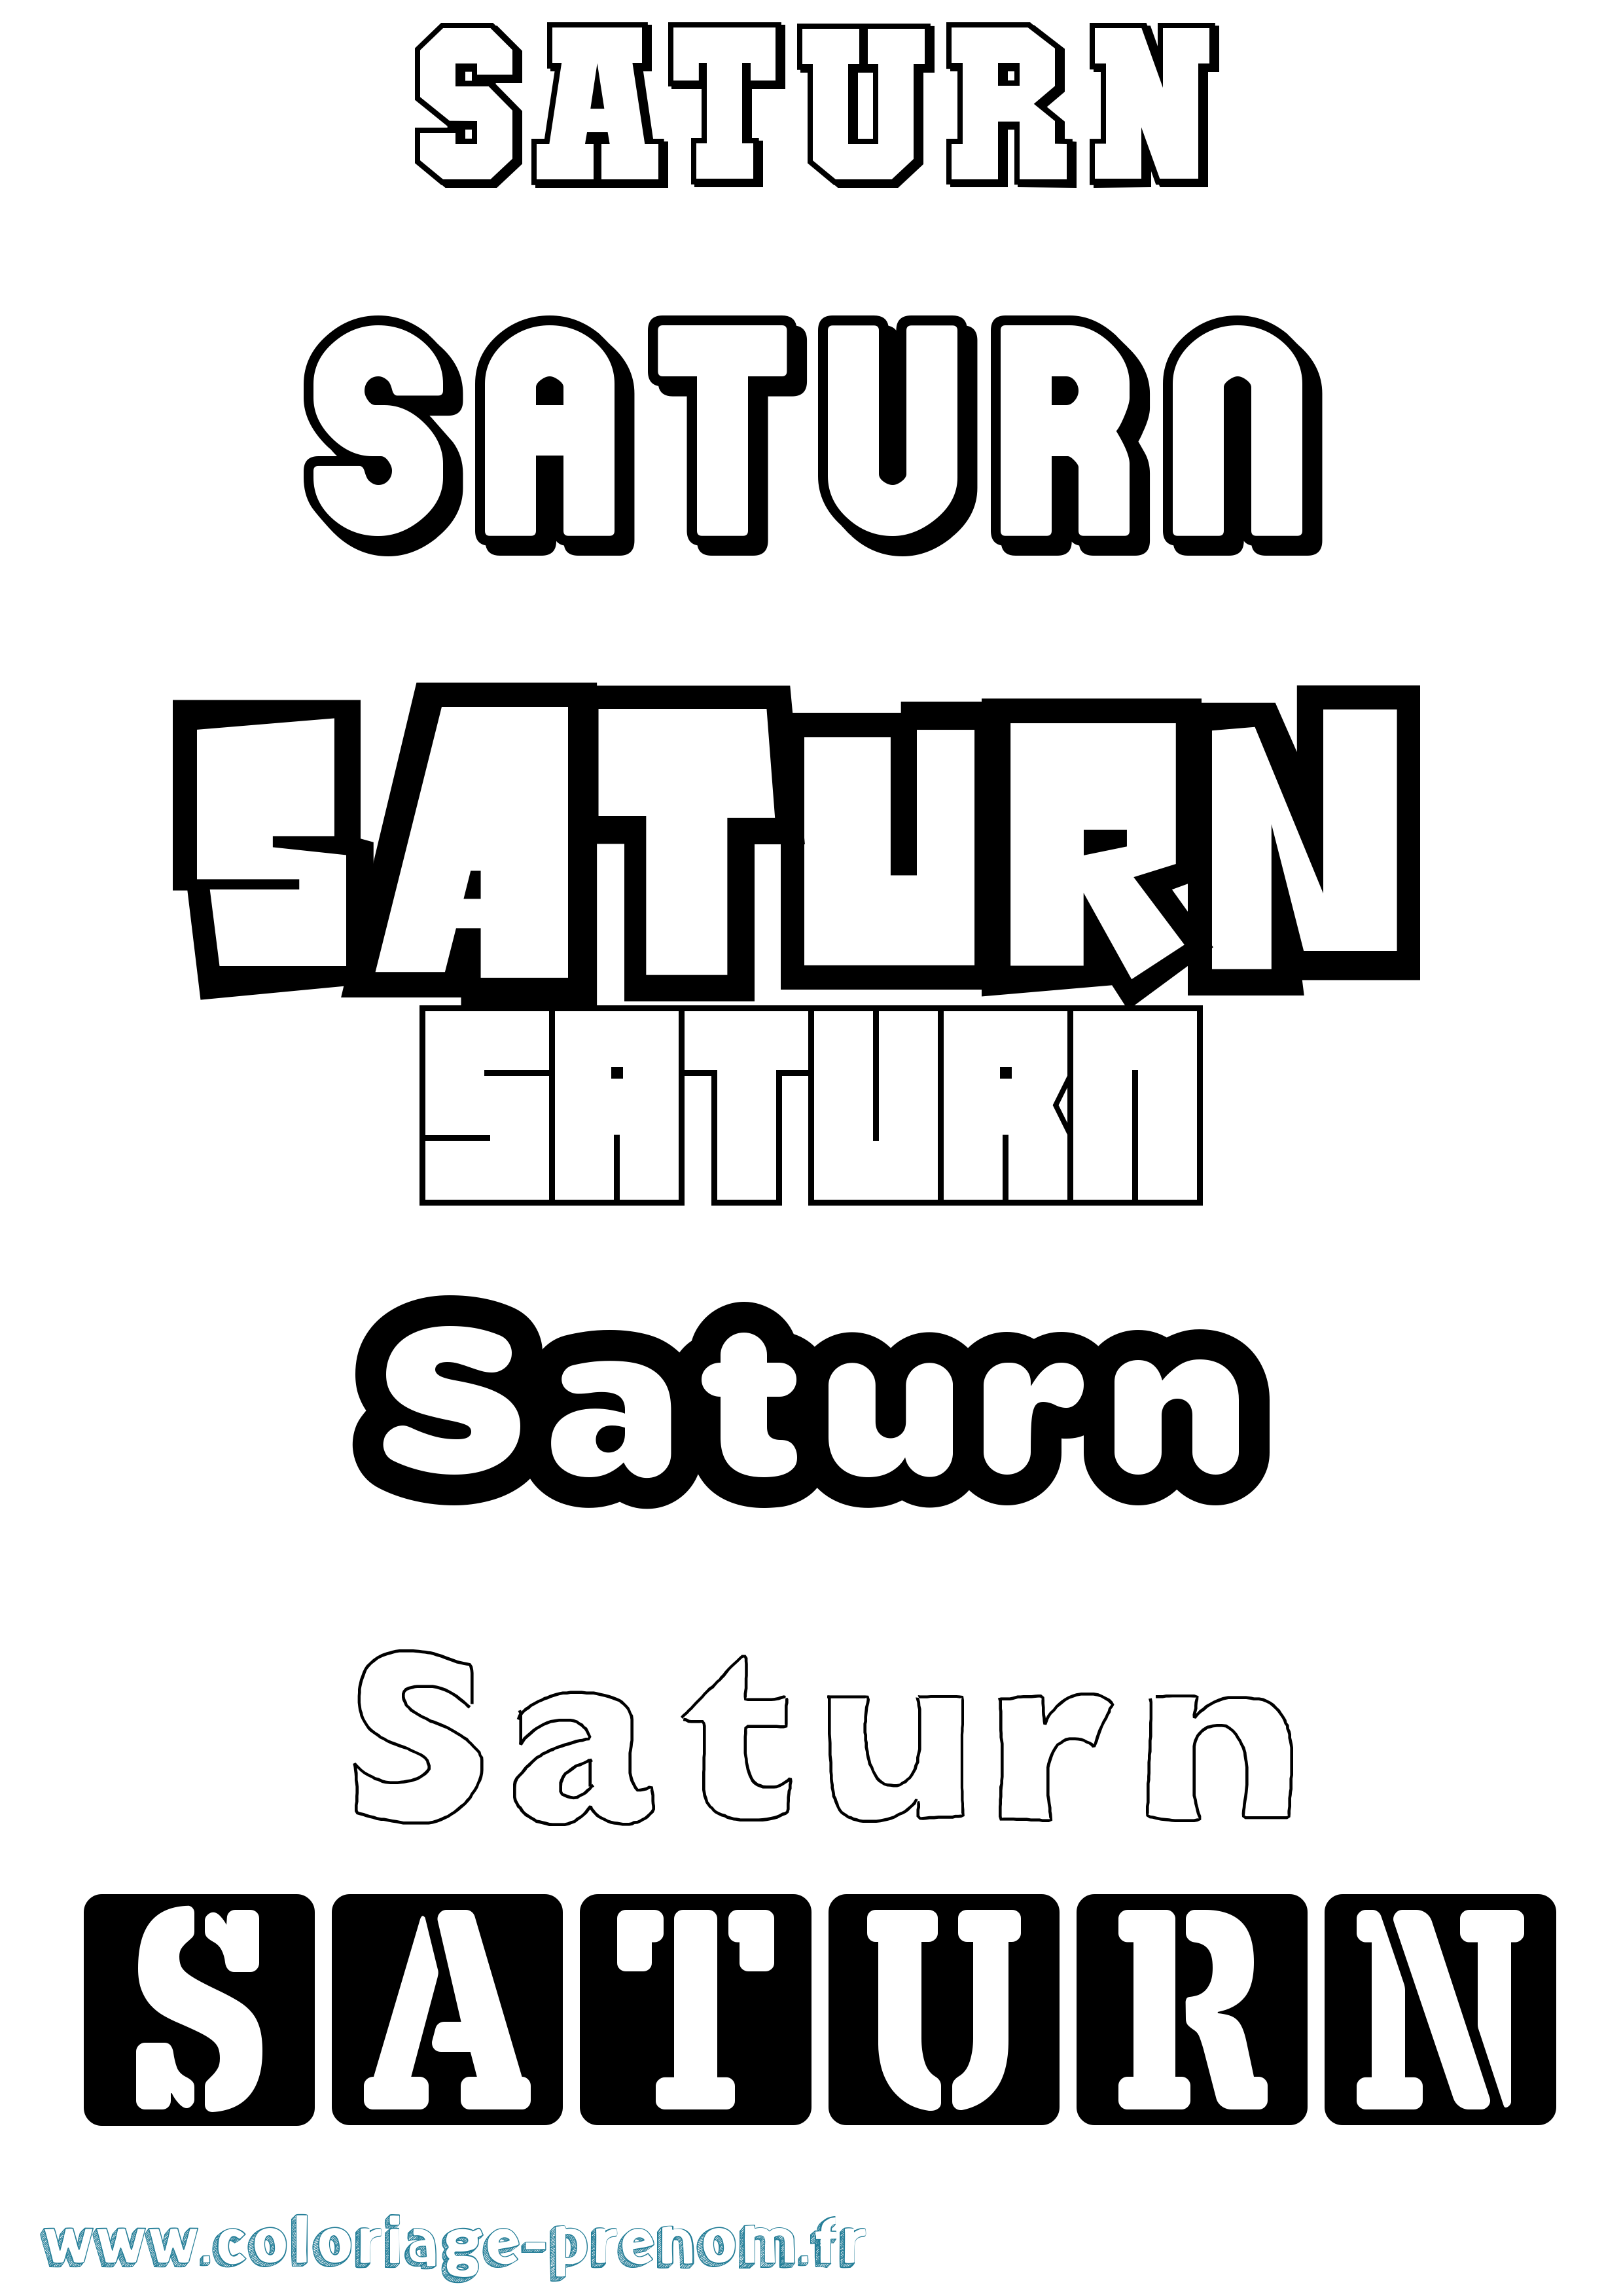 Coloriage prénom Saturn Simple